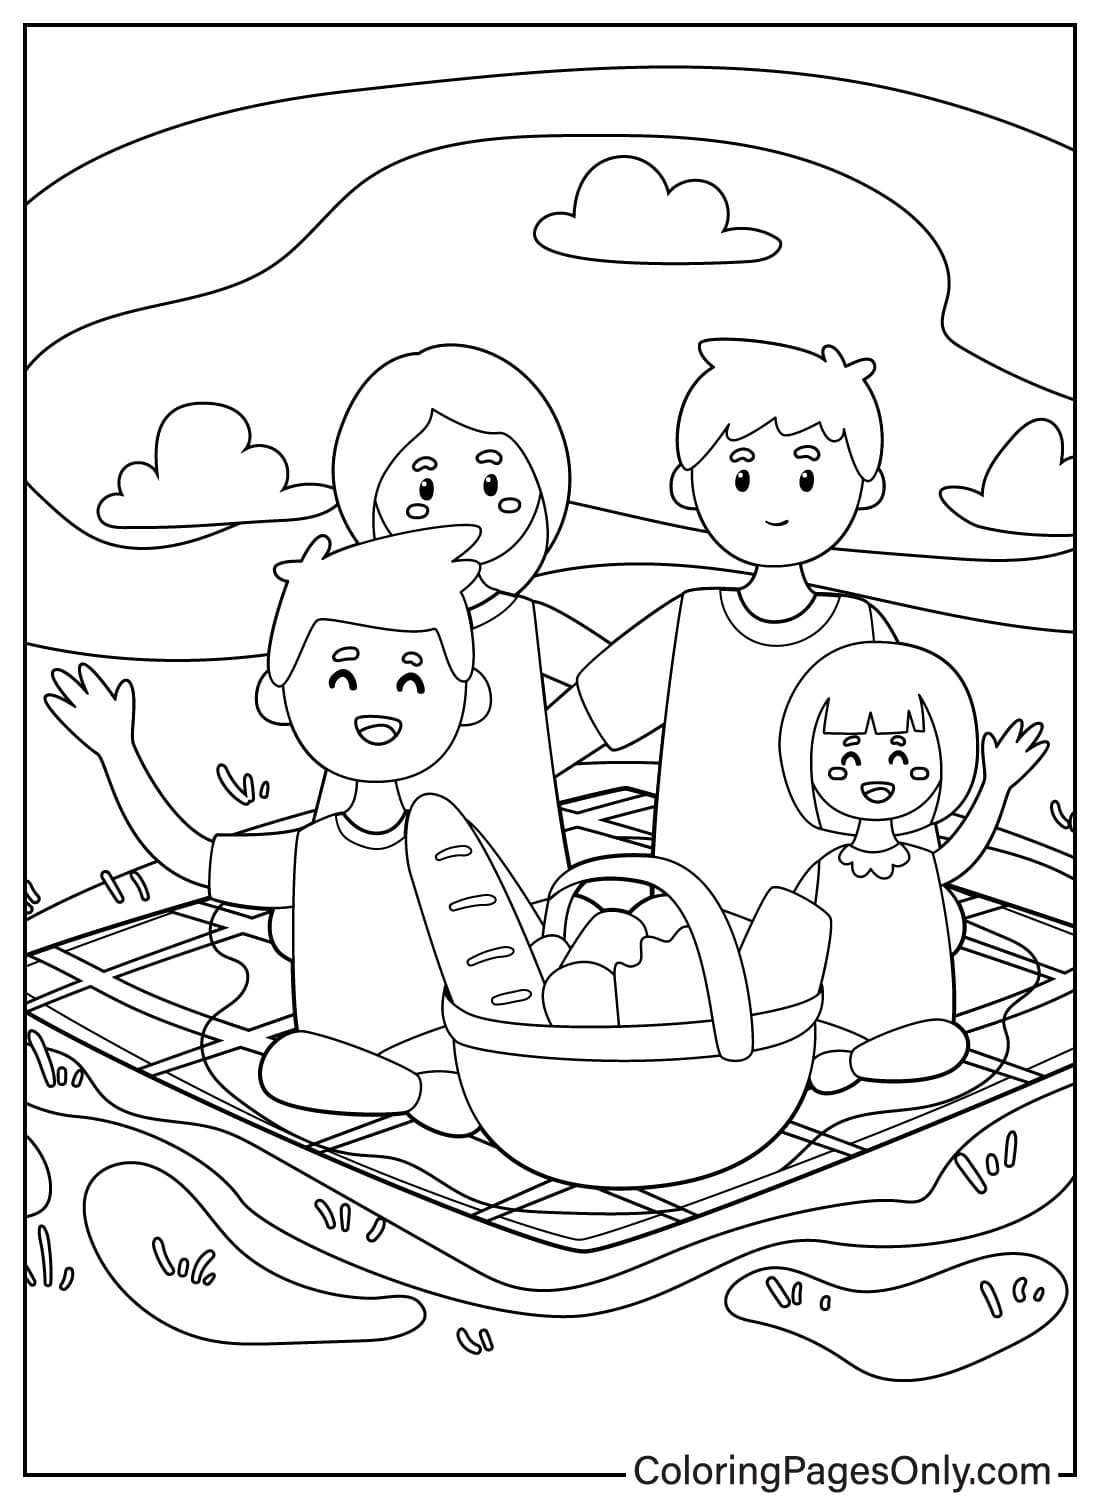 Folha para colorir de piquenique em família para crianças do Dia da Família